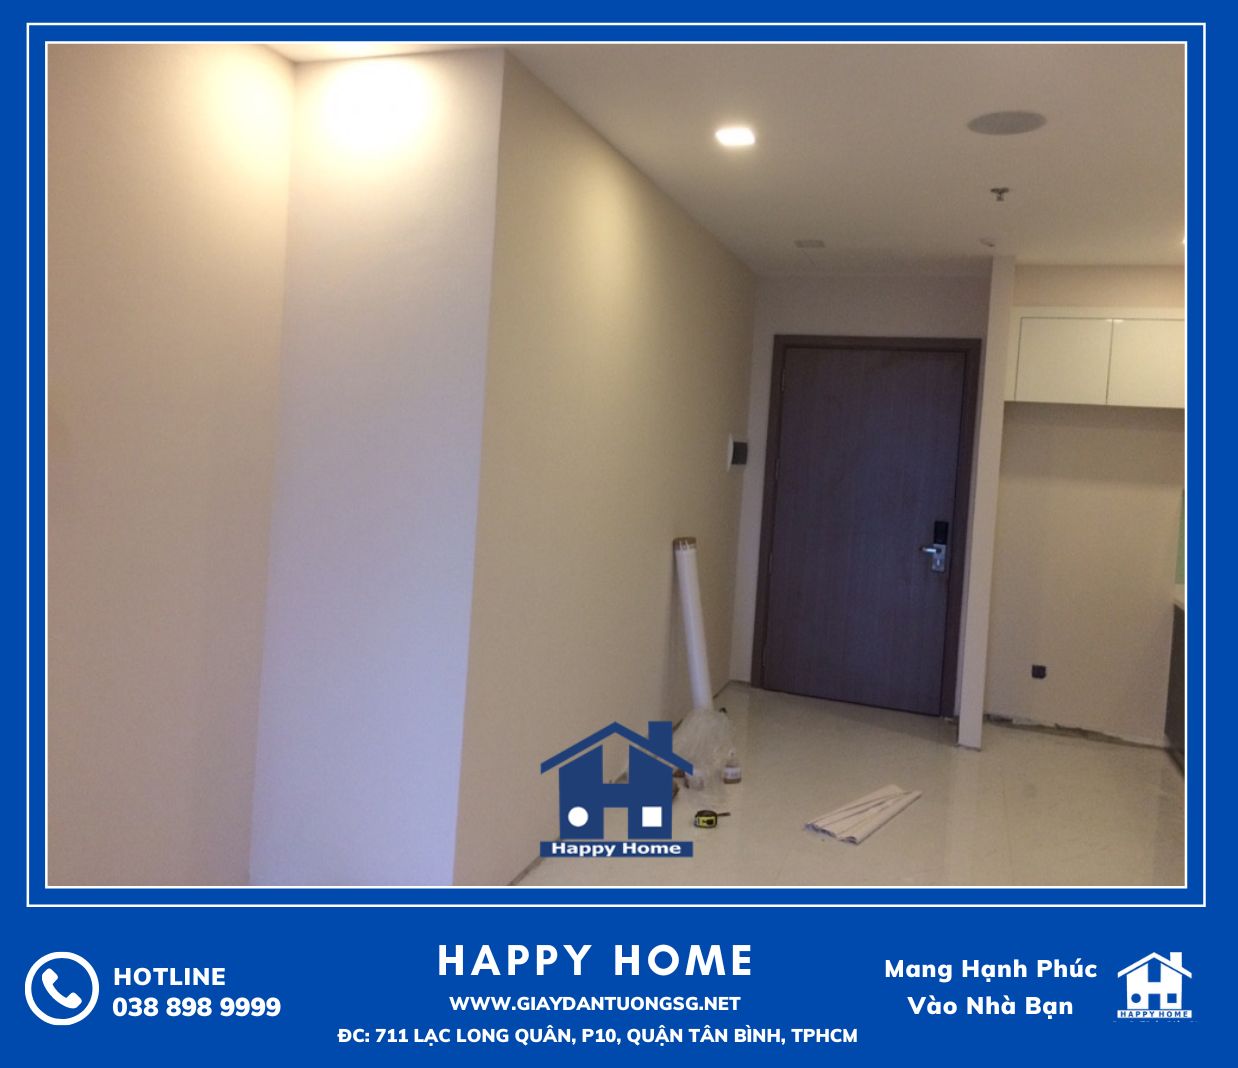 Lựa chọn mẫu giấy dán tường cho phòng khách cho chung cư phải là màu sắc tươi sang nhằm mục đích tạo không gian rộng hơn. 